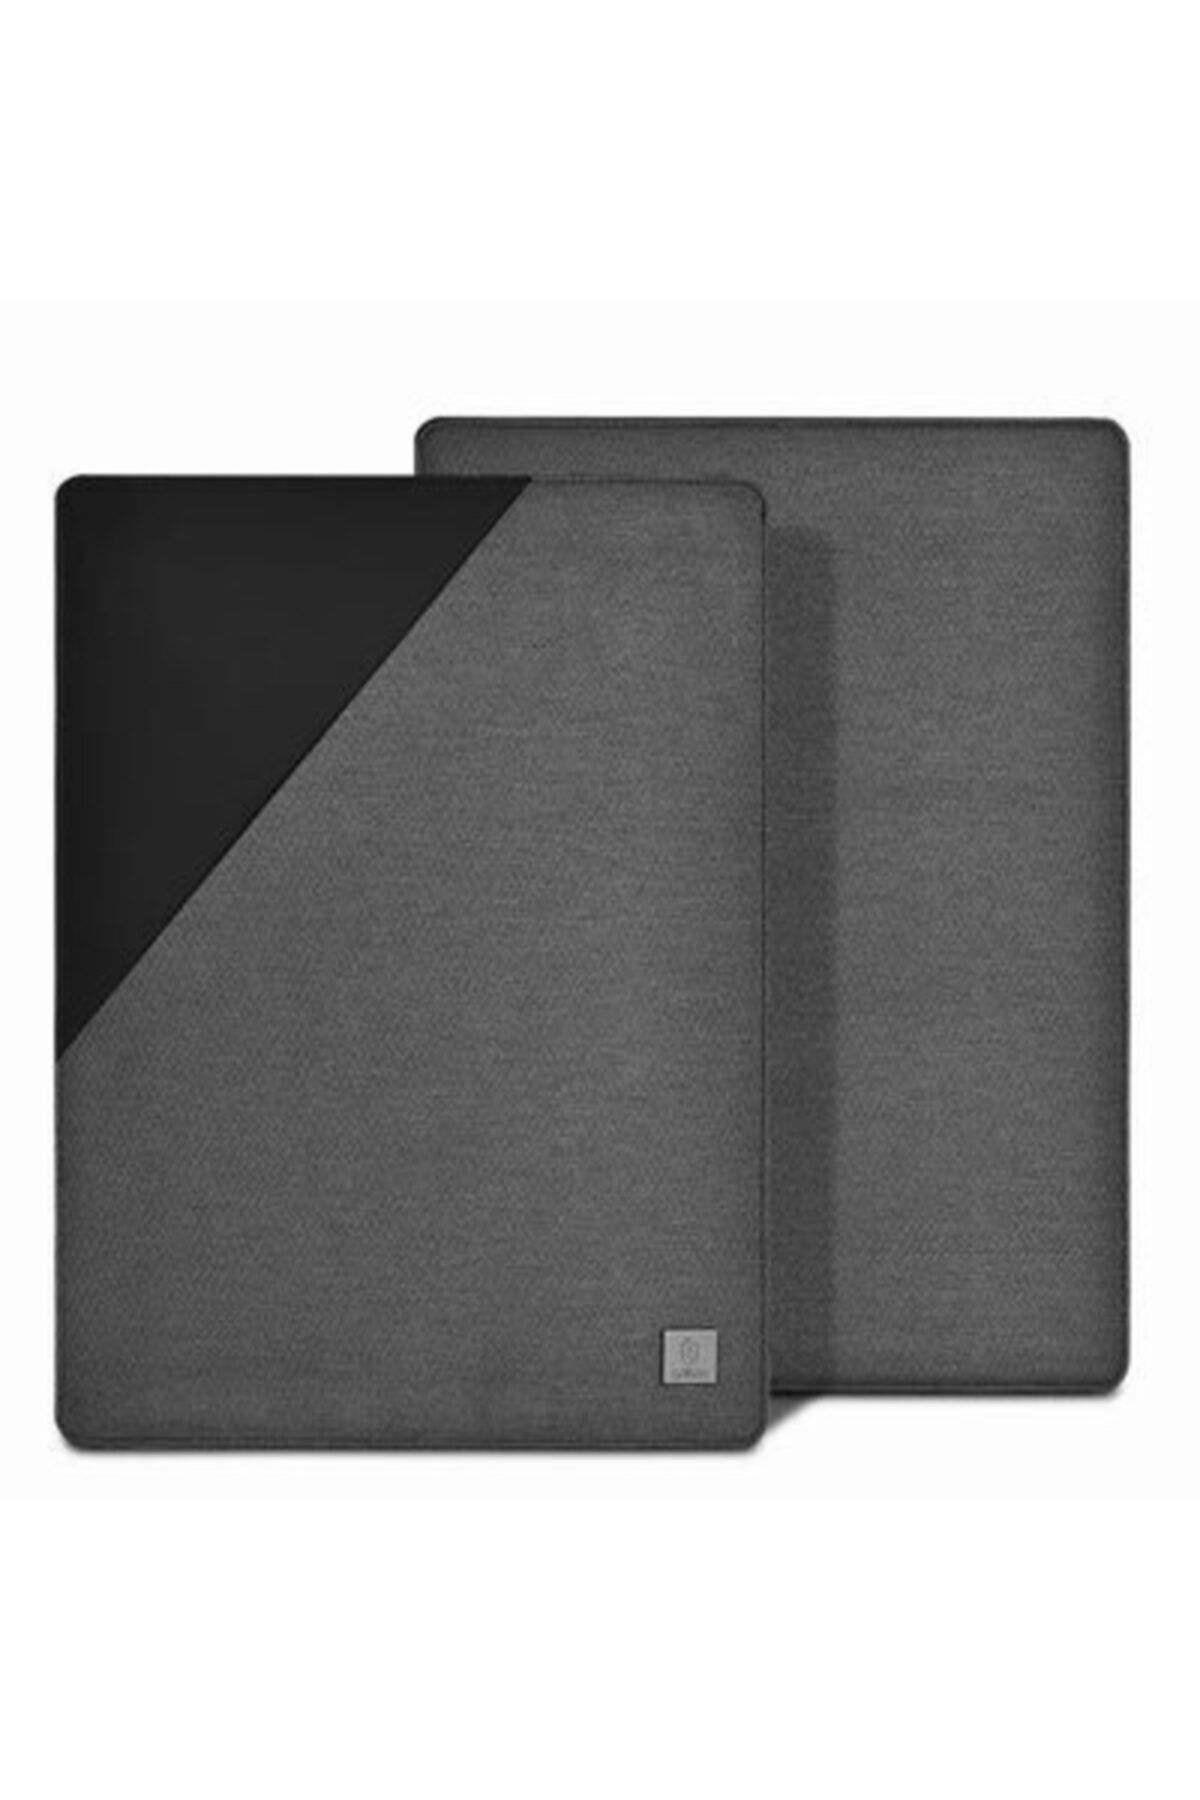 Roaks Apple Macbook 13.3' Air 2020 Wiwu Blade Sleeve Laptop Kılıf (kumaş & Deri Yüzey) Gri